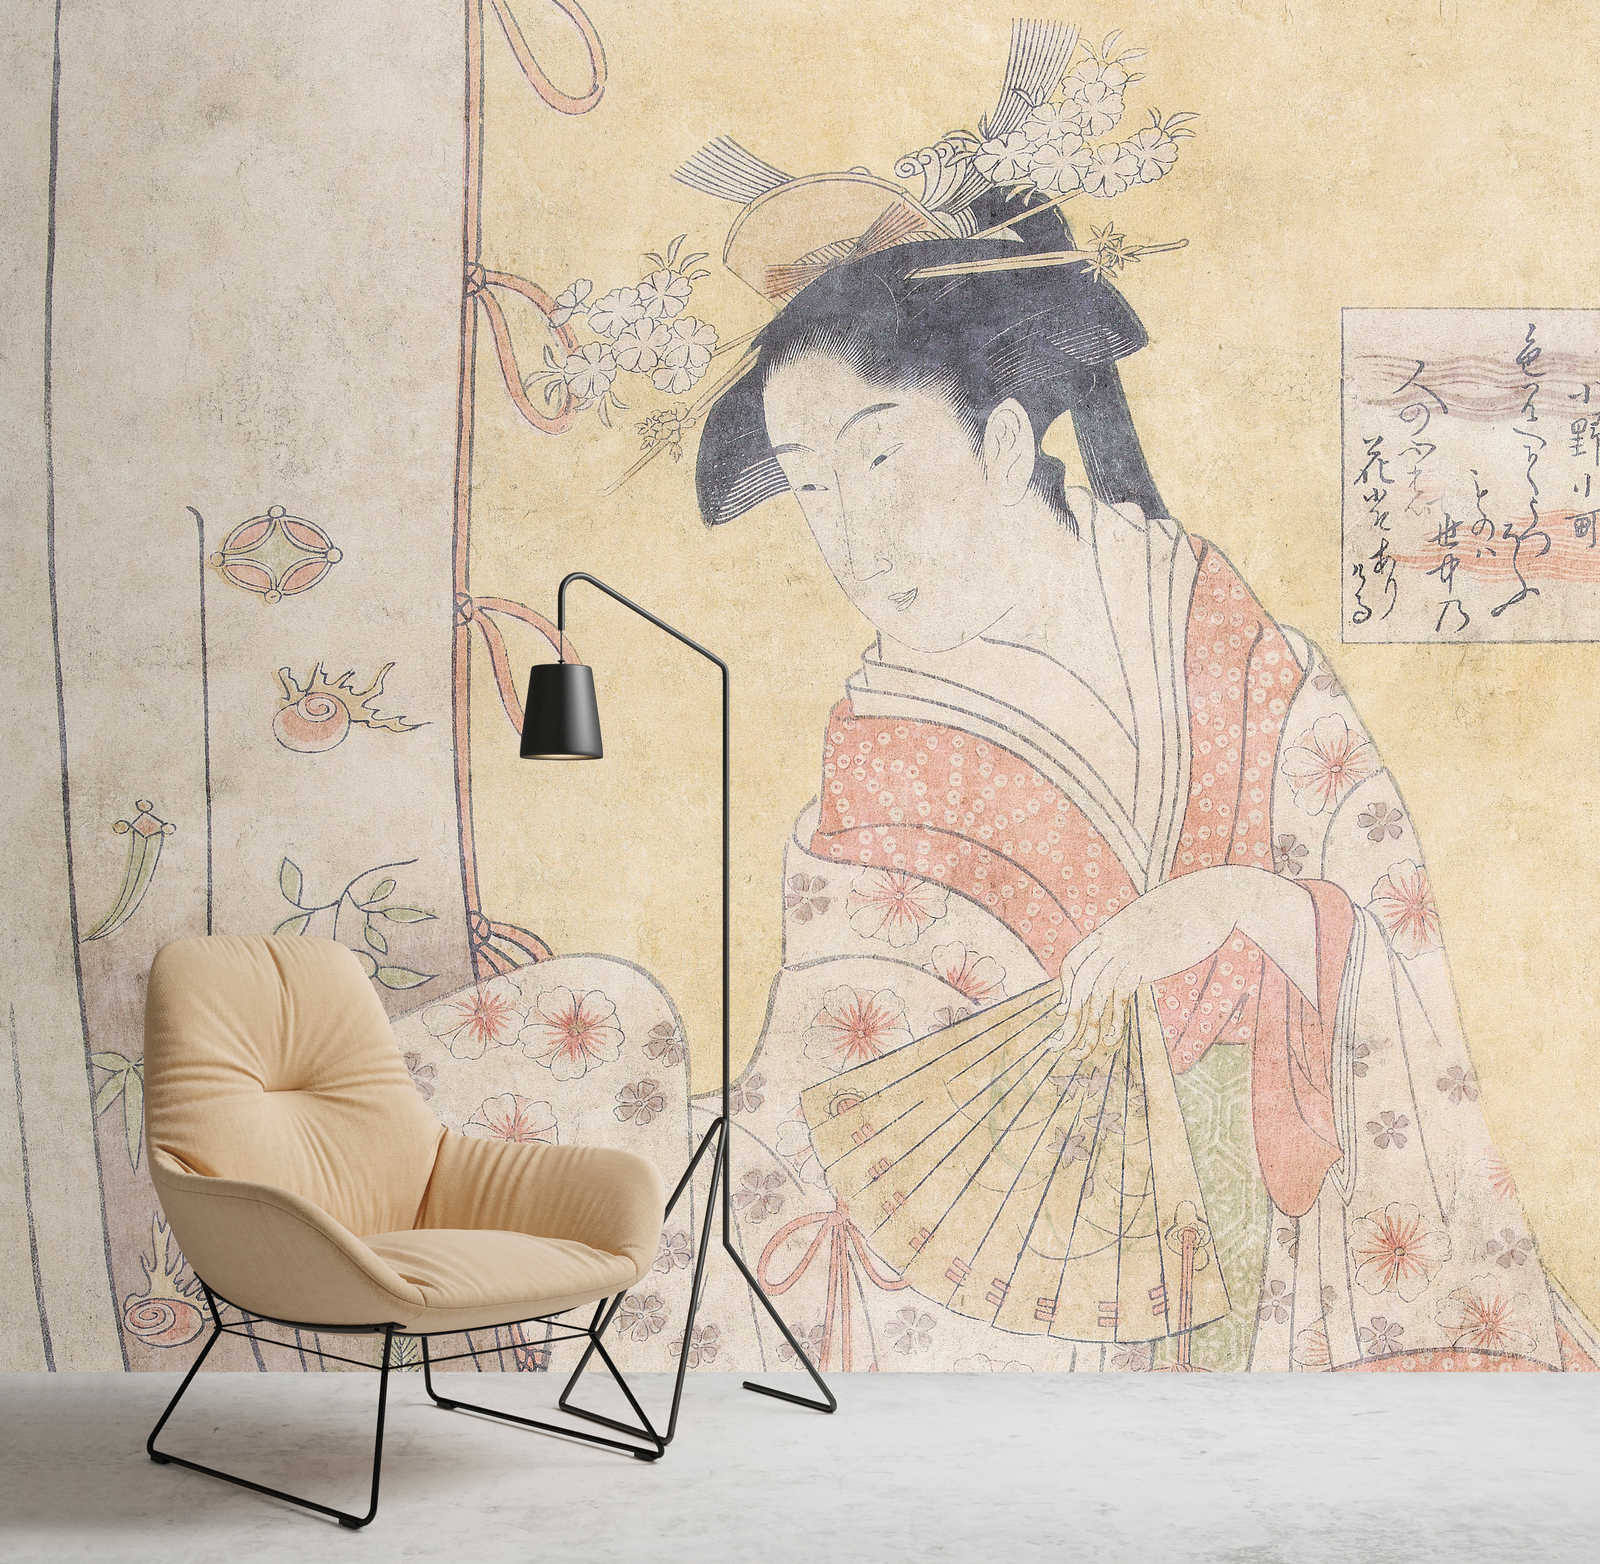             Osaka 2 - Asia foto papel pintado obra de arte de la vendimia señora con el ventilador
        